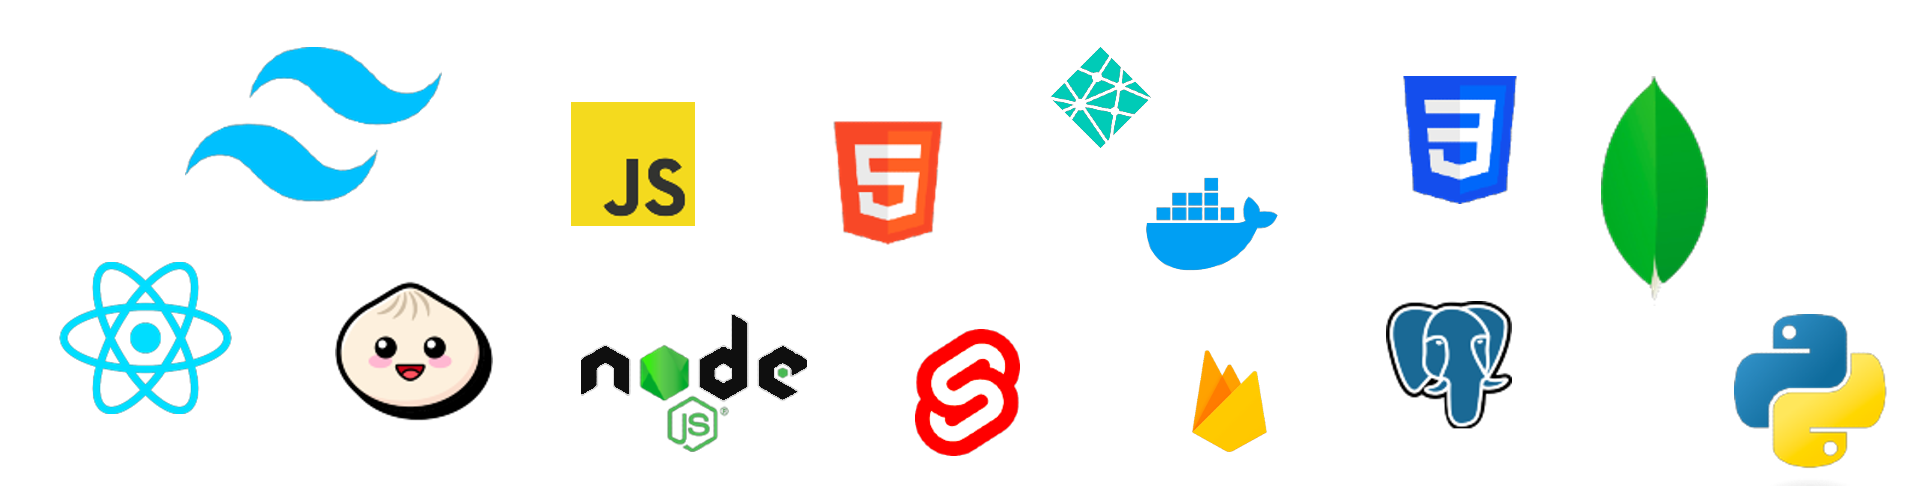 Programming logos